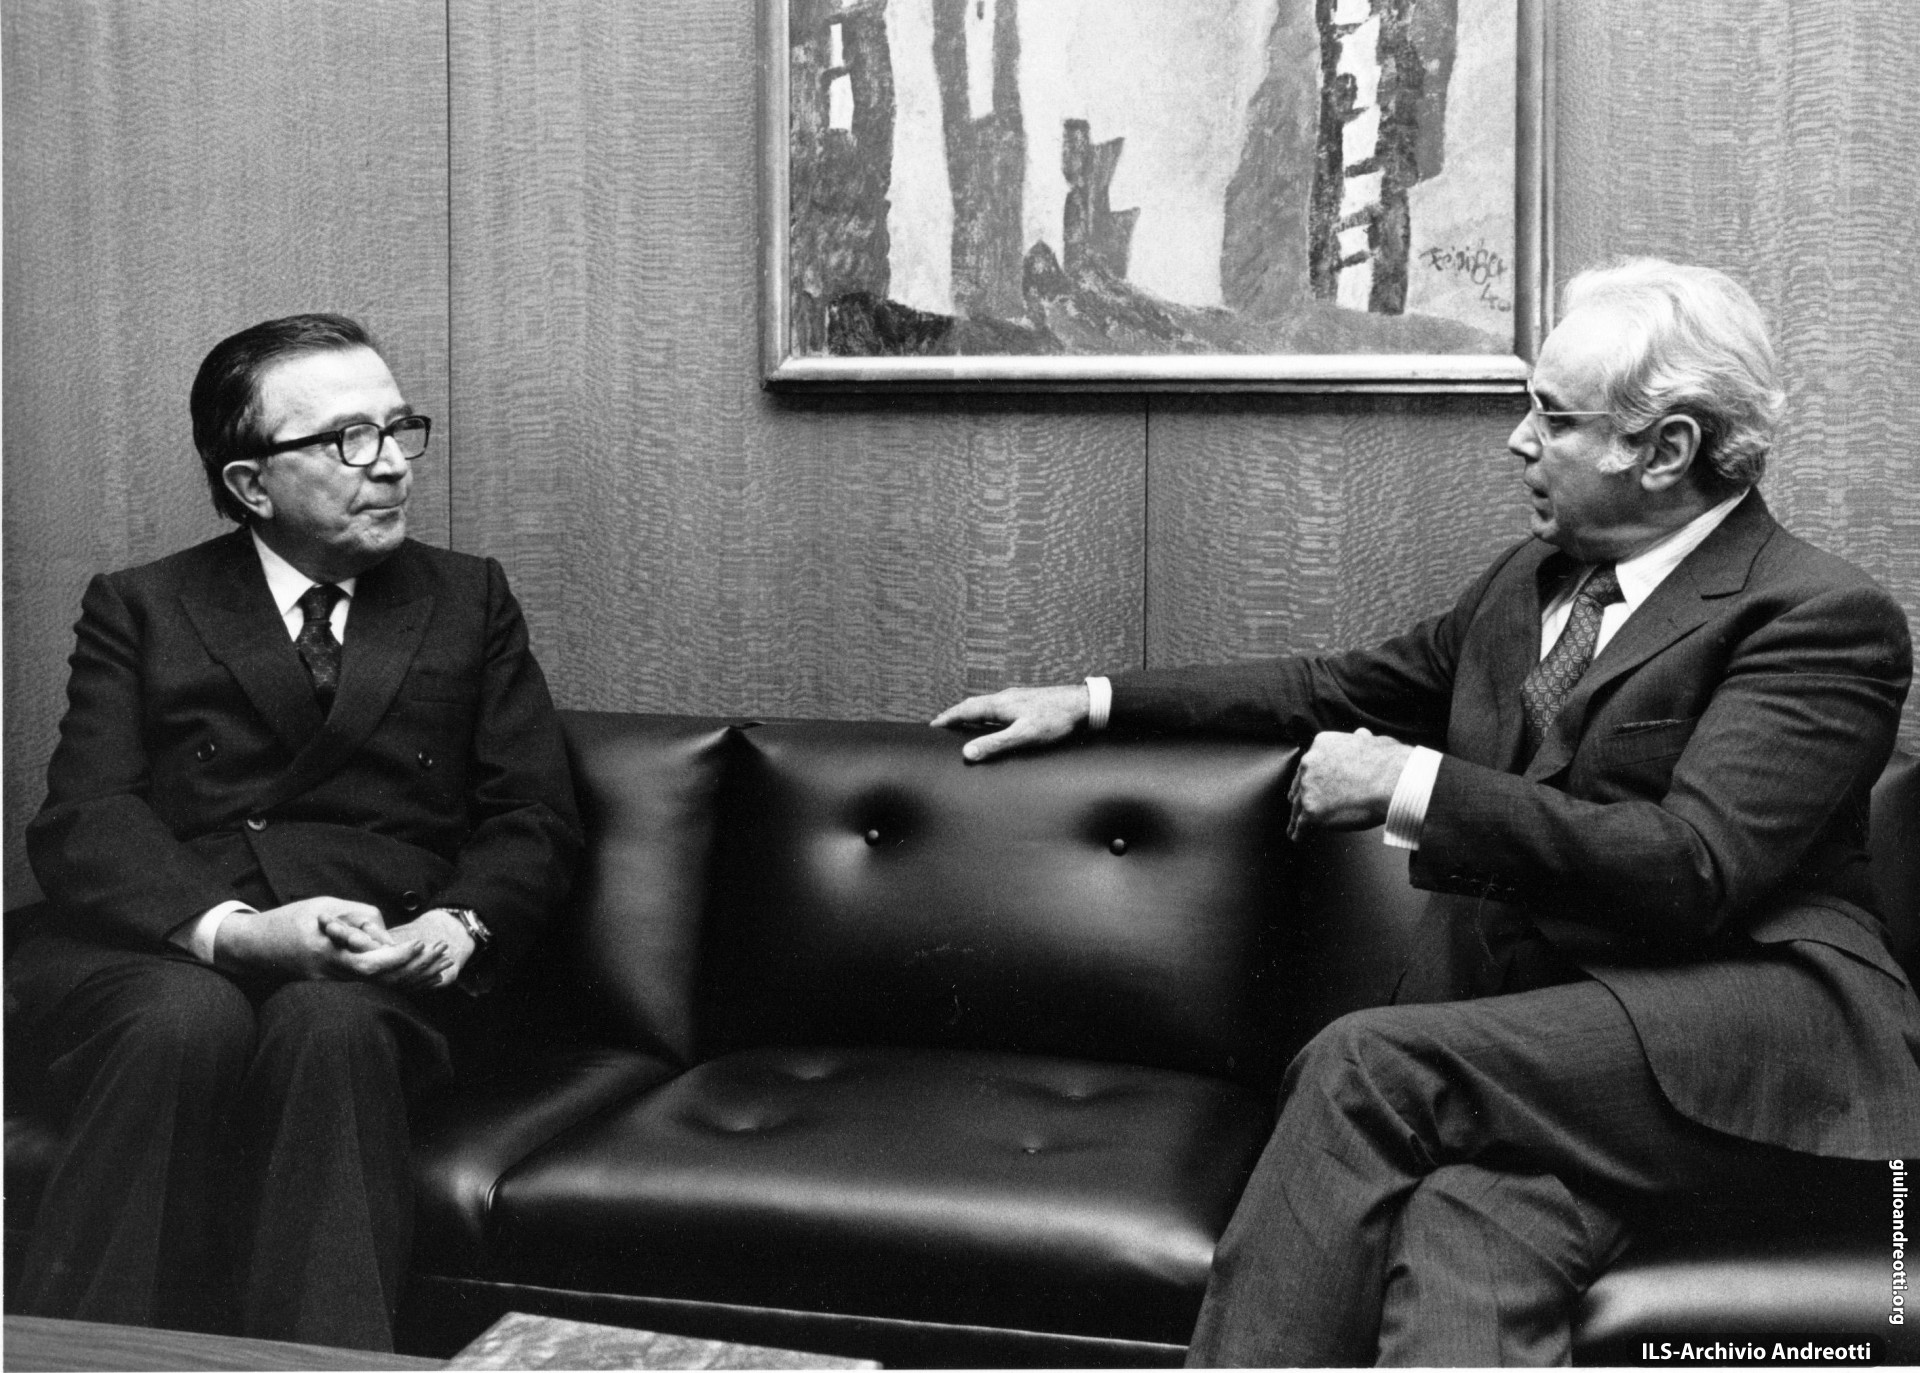 1 ottobre 1984. Colloquio di Andreotti con il Segretario generale dell’ONU, Perez de Cuellar, a margine dei lavori dell’Assemblea Generale delle Nazioni Unite.